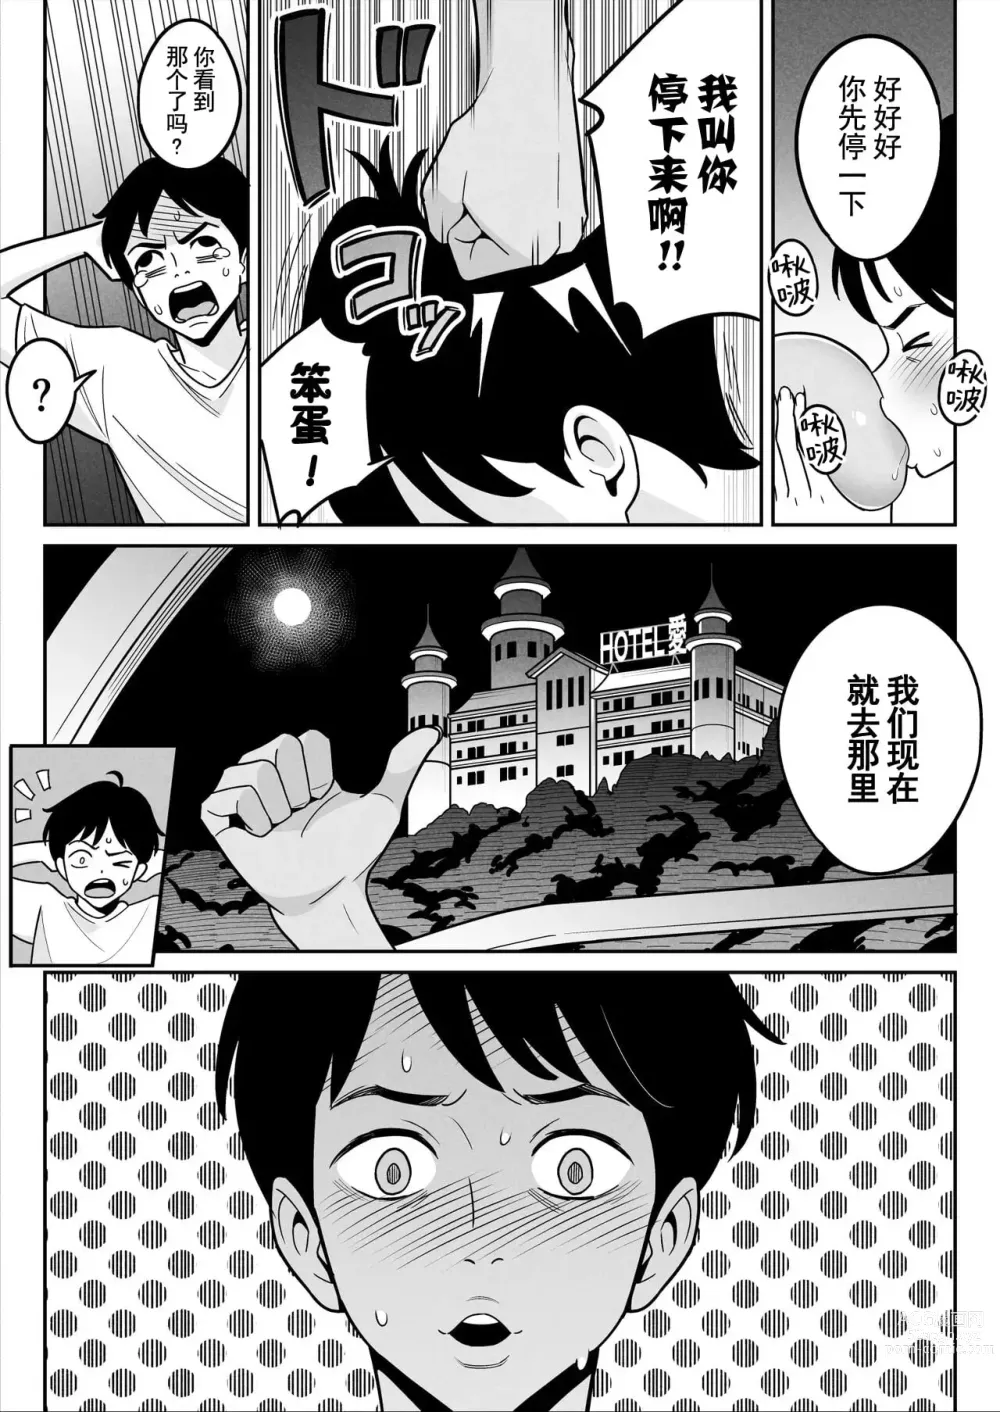 Page 19 of doujinshi Muchi-Niku Heaven de Pan Pan Pan